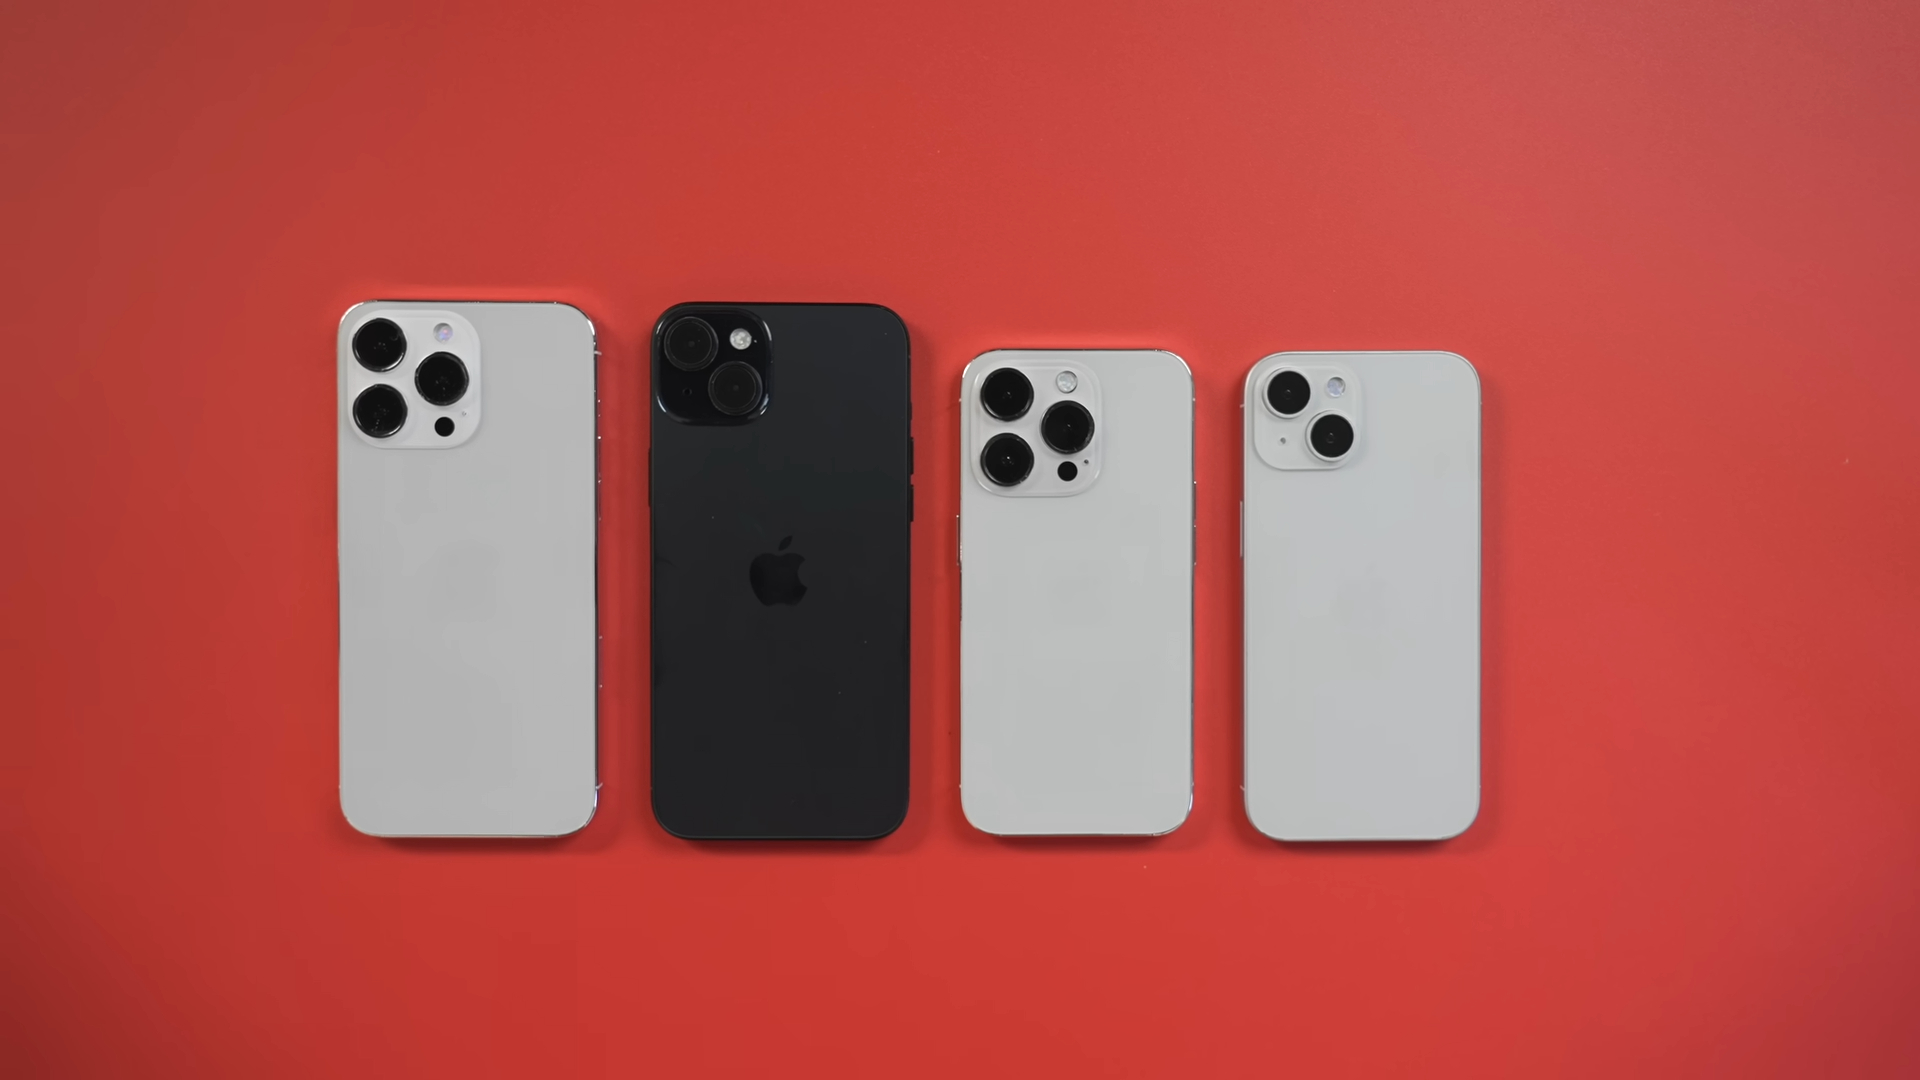 Mô hình iPhone 13 Pro lộ diện với rãnh tai thỏ nhỏ hơn vị trí loa thoại và  camera selfie thay đổi  IPHONE BÌNH DƯƠNG  GOLD APPLE